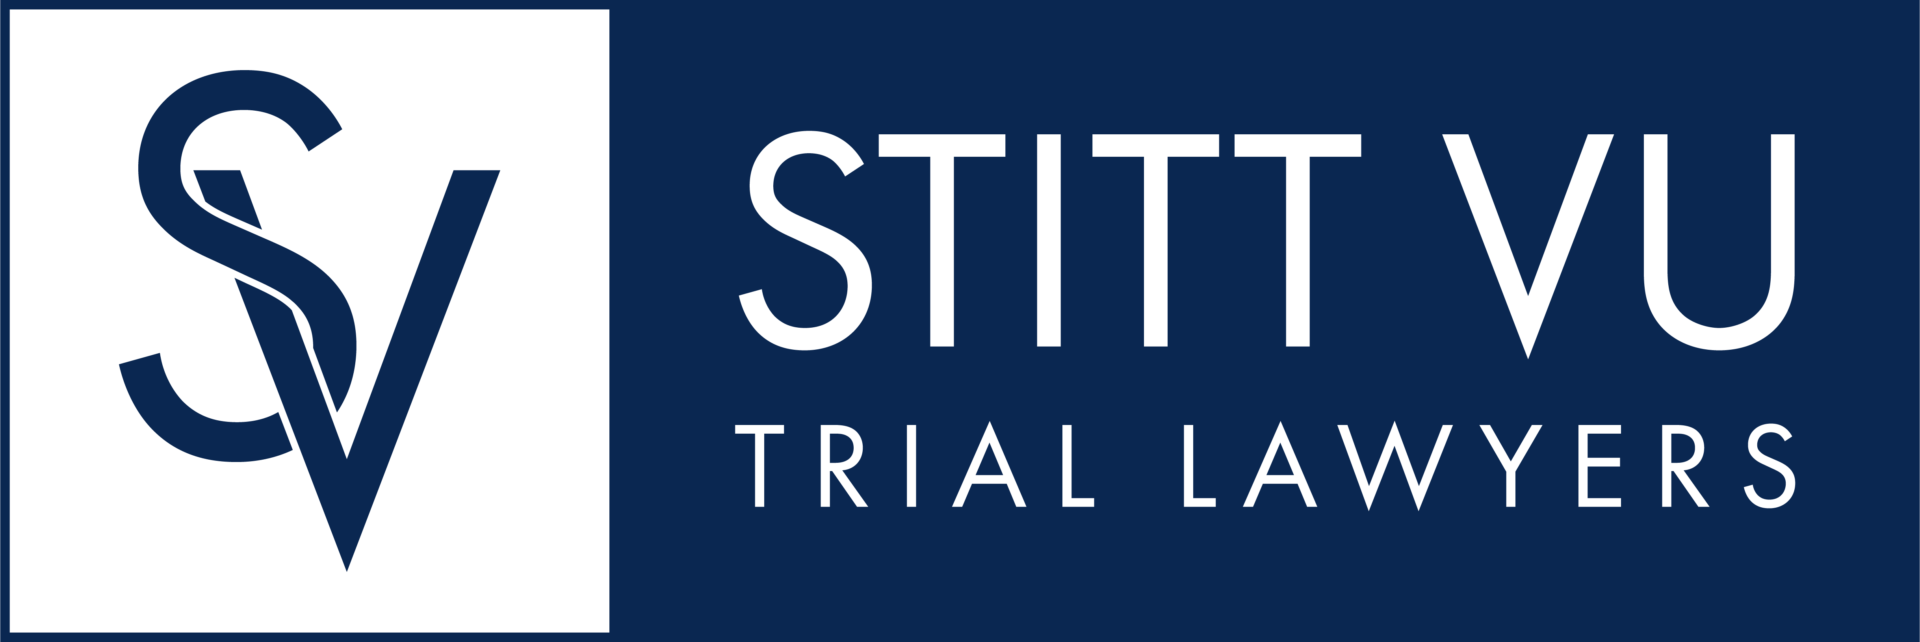 stitt vu trial lawyers logo